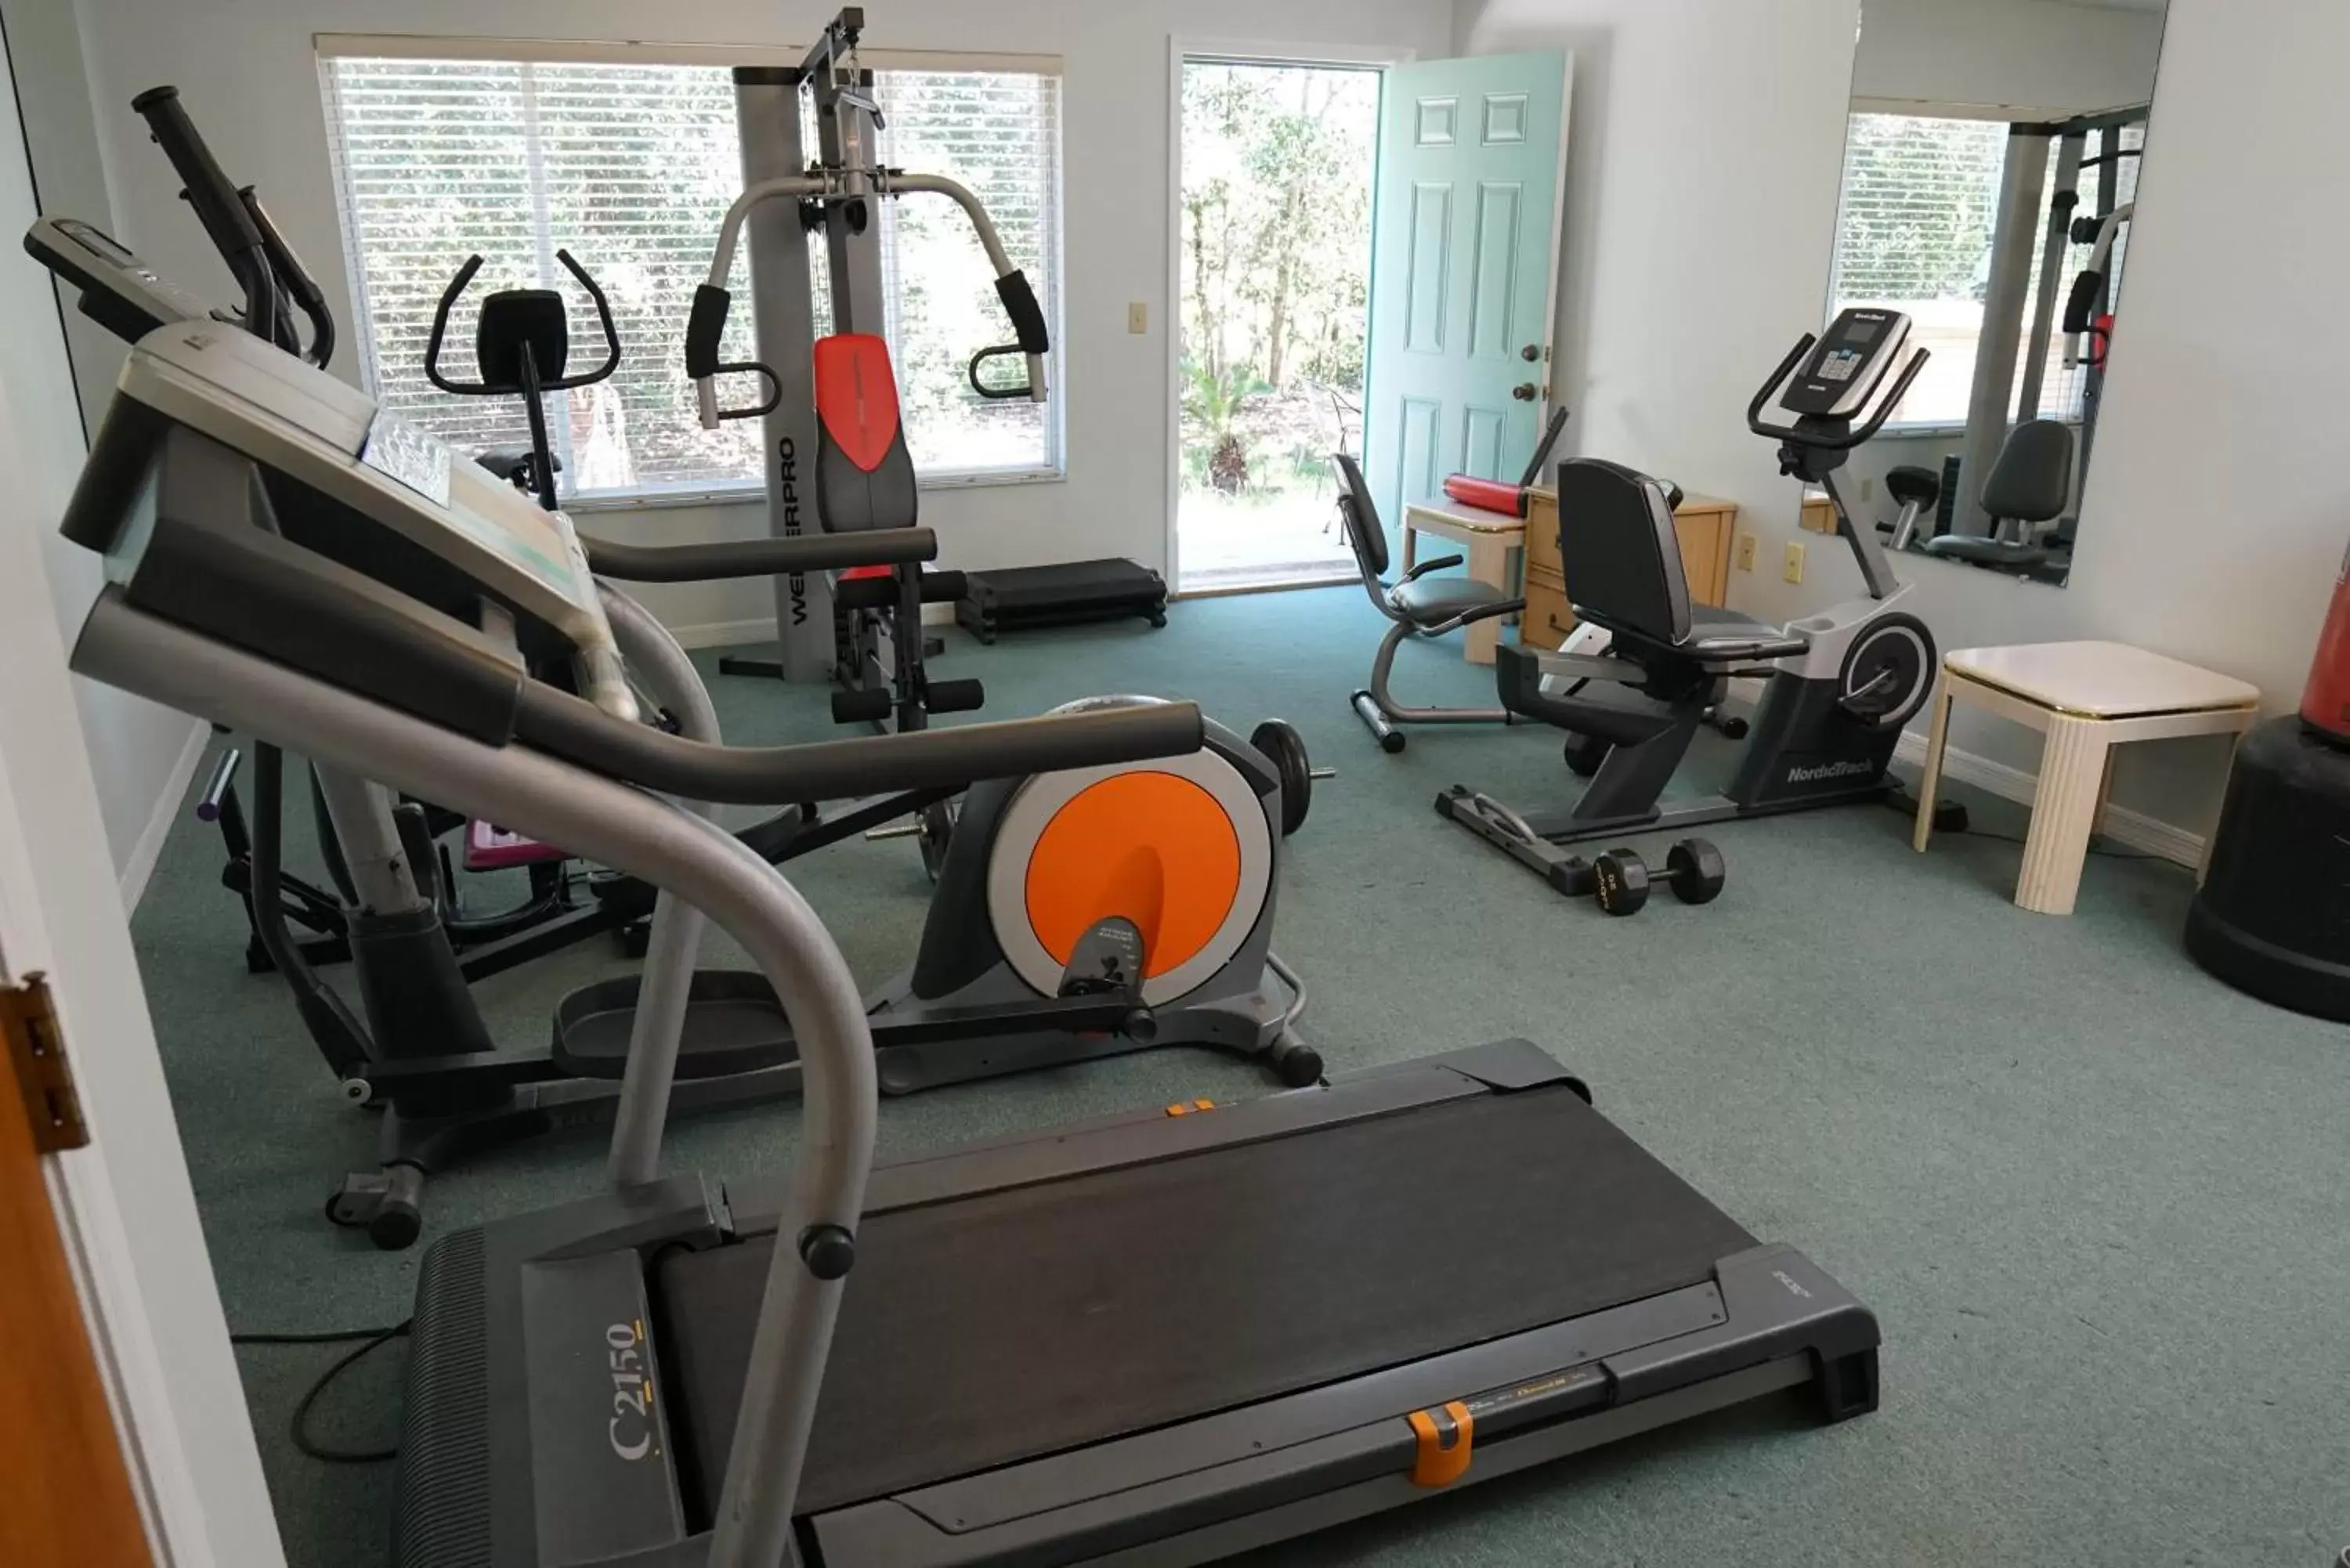 Fitness centre/facilities, Fitness Center/Facilities in Vacation Villas Resort